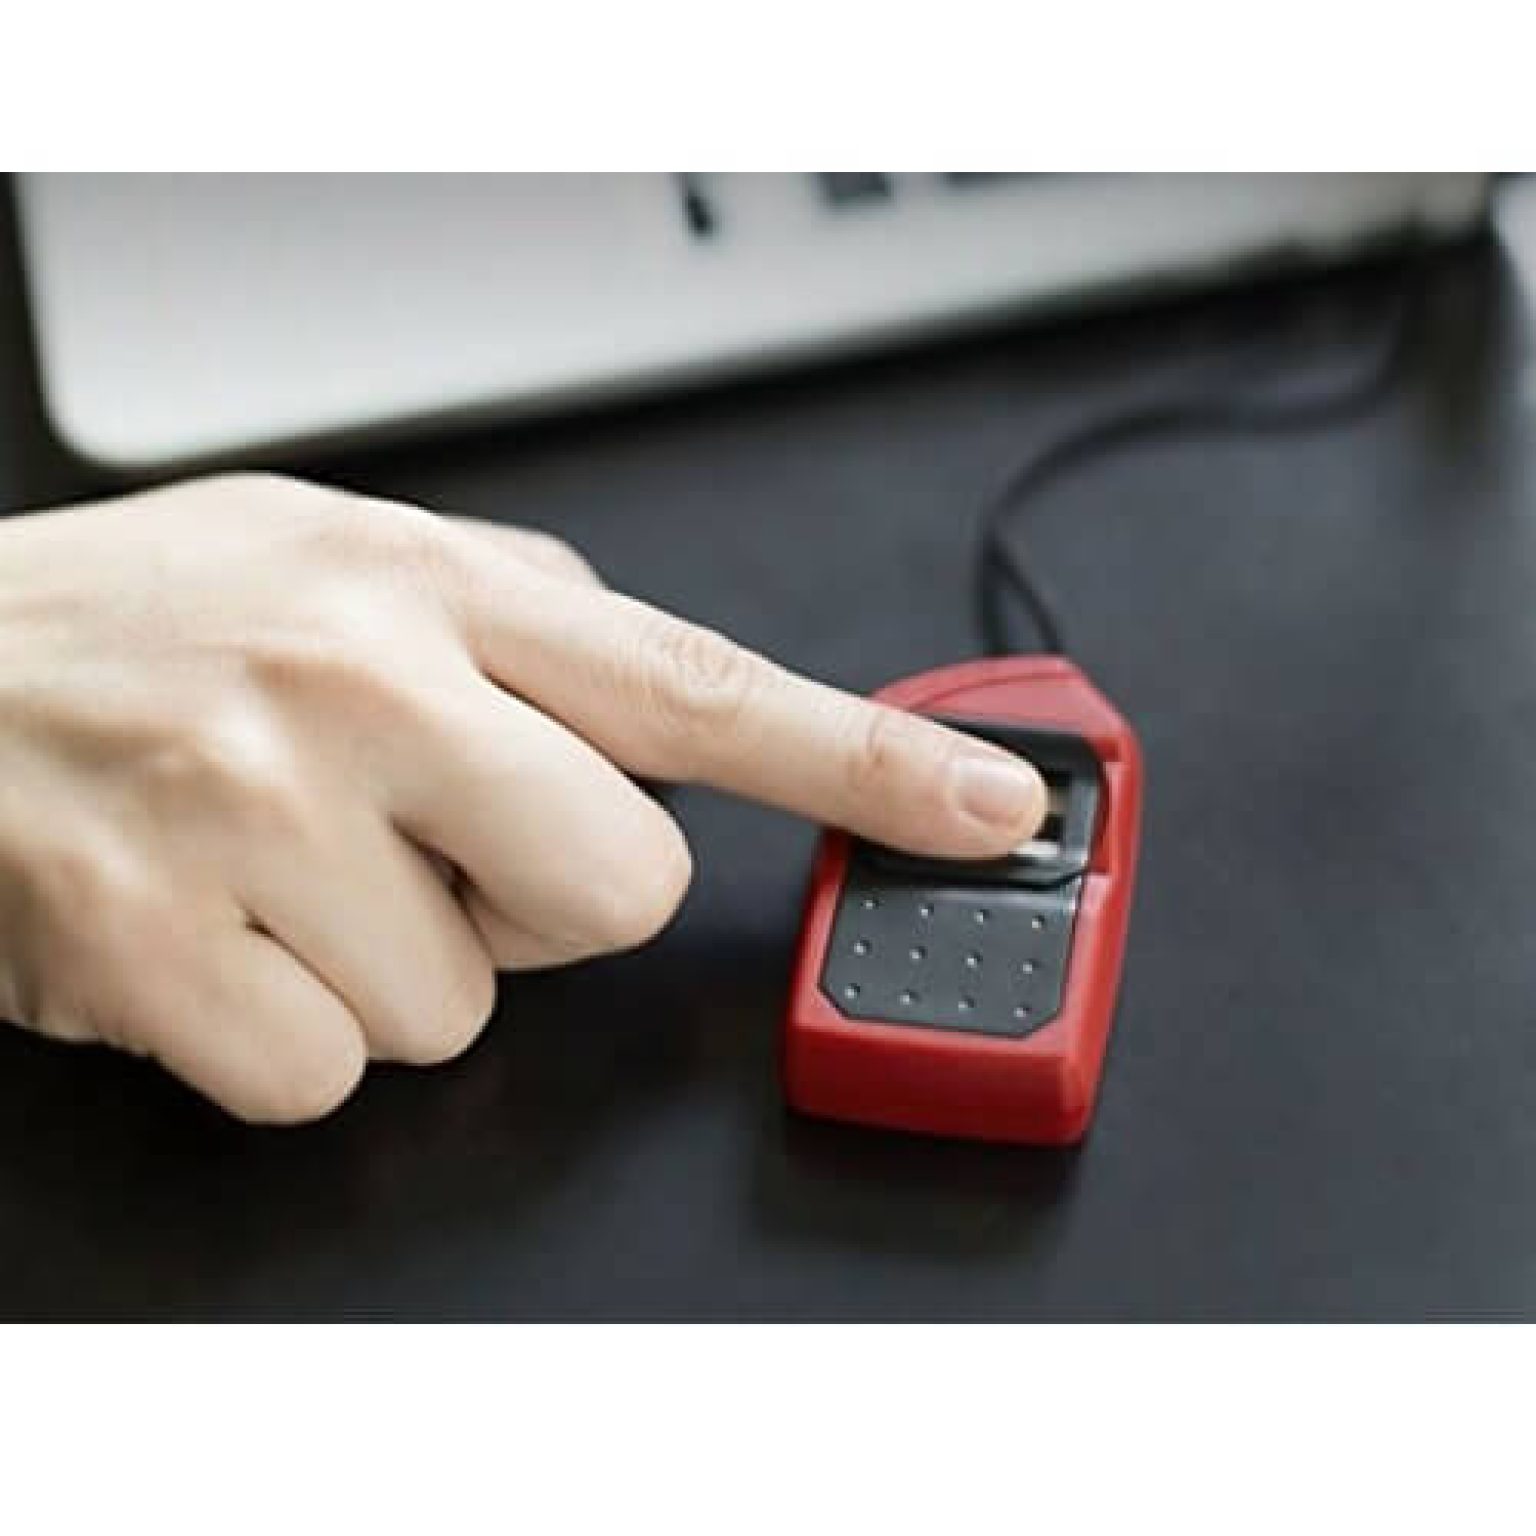 Buy Morpho Mso 1300 E3 Device Fingerprint Scanner Online 